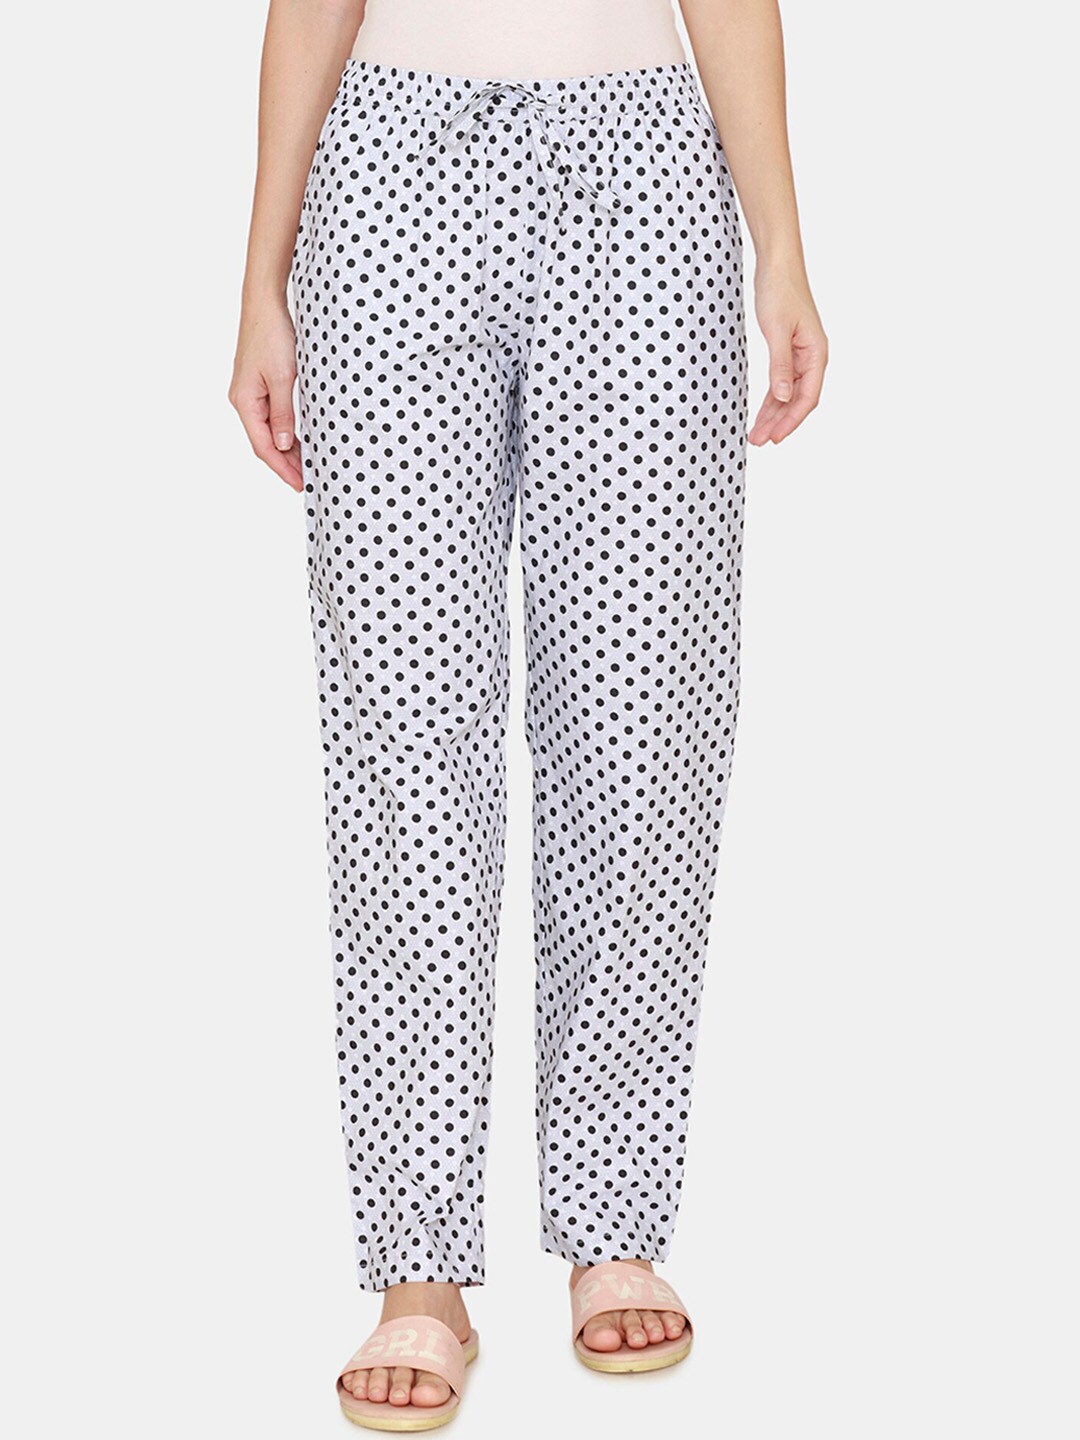 Coucou by Zivame Women White Polka Dot Printed Cotton Pyjama Price in India